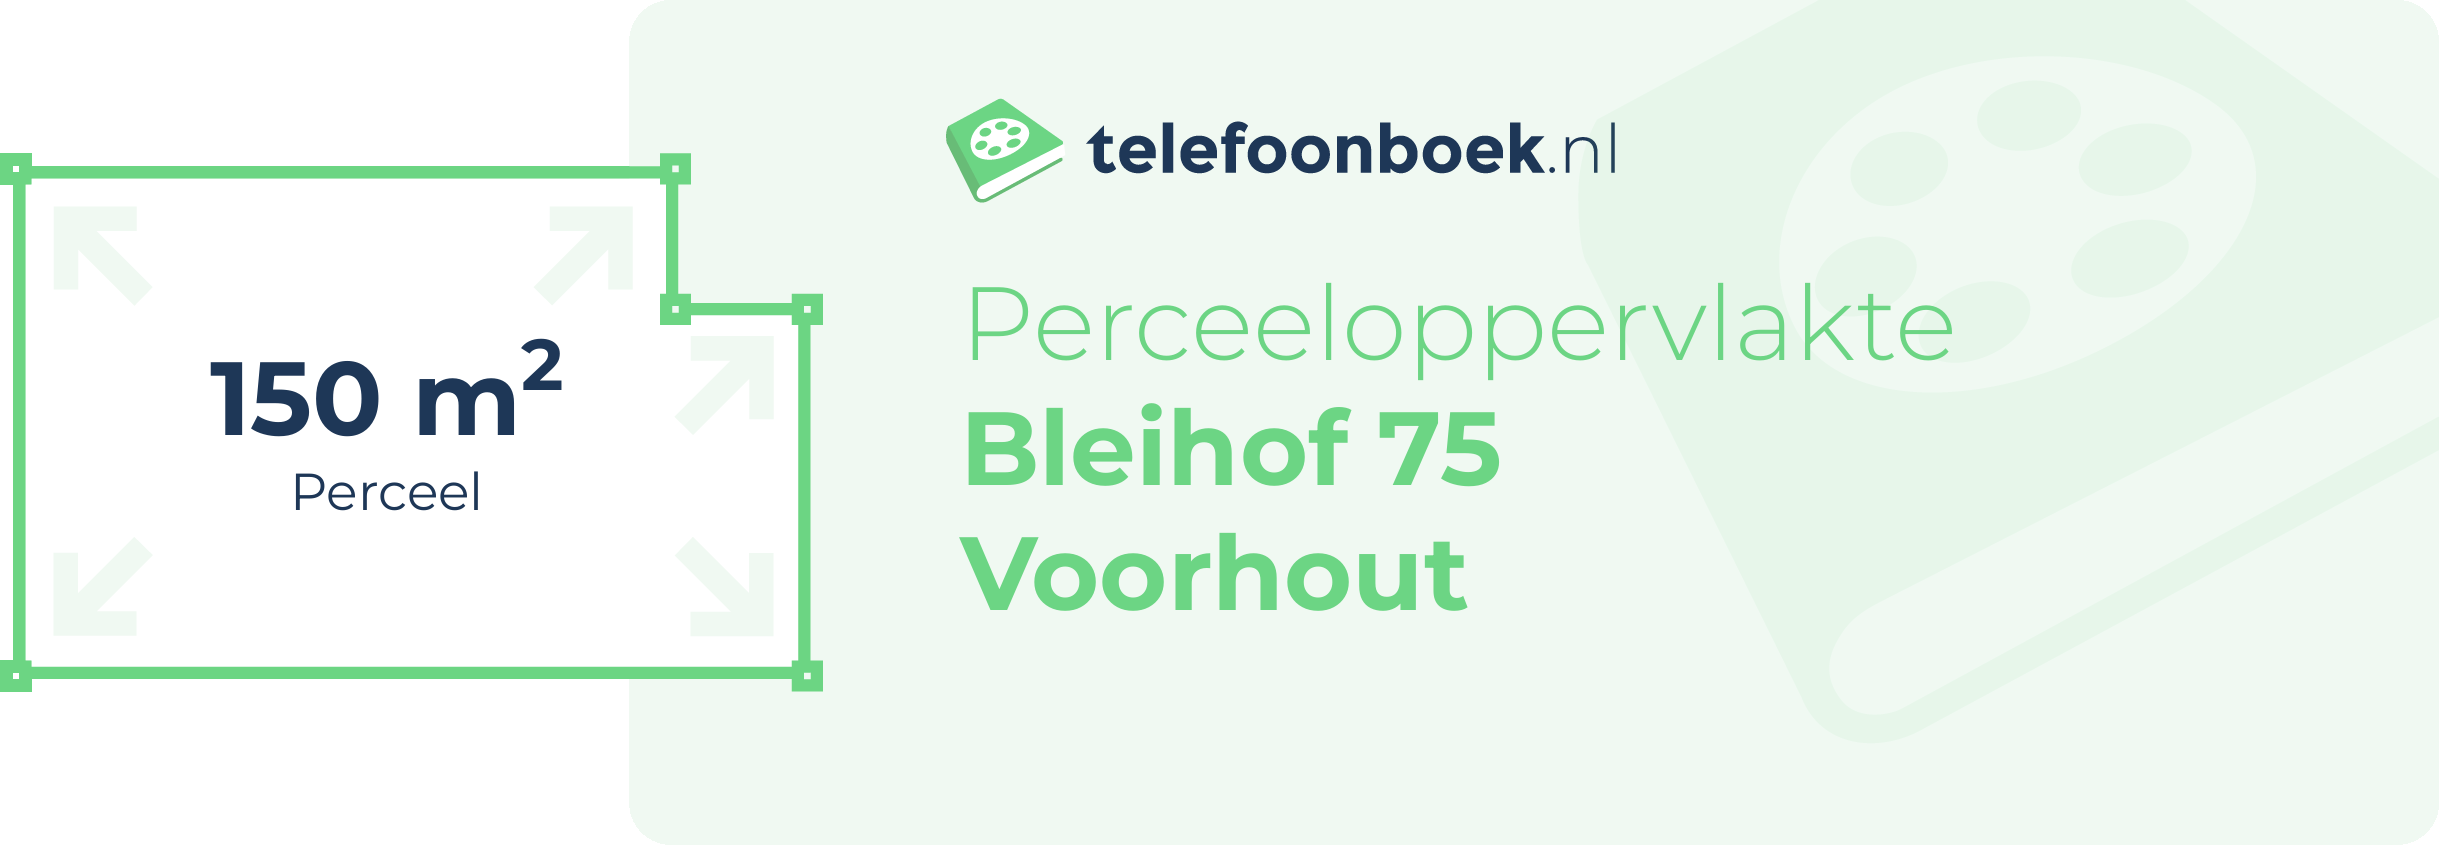 Perceeloppervlakte Bleihof 75 Voorhout